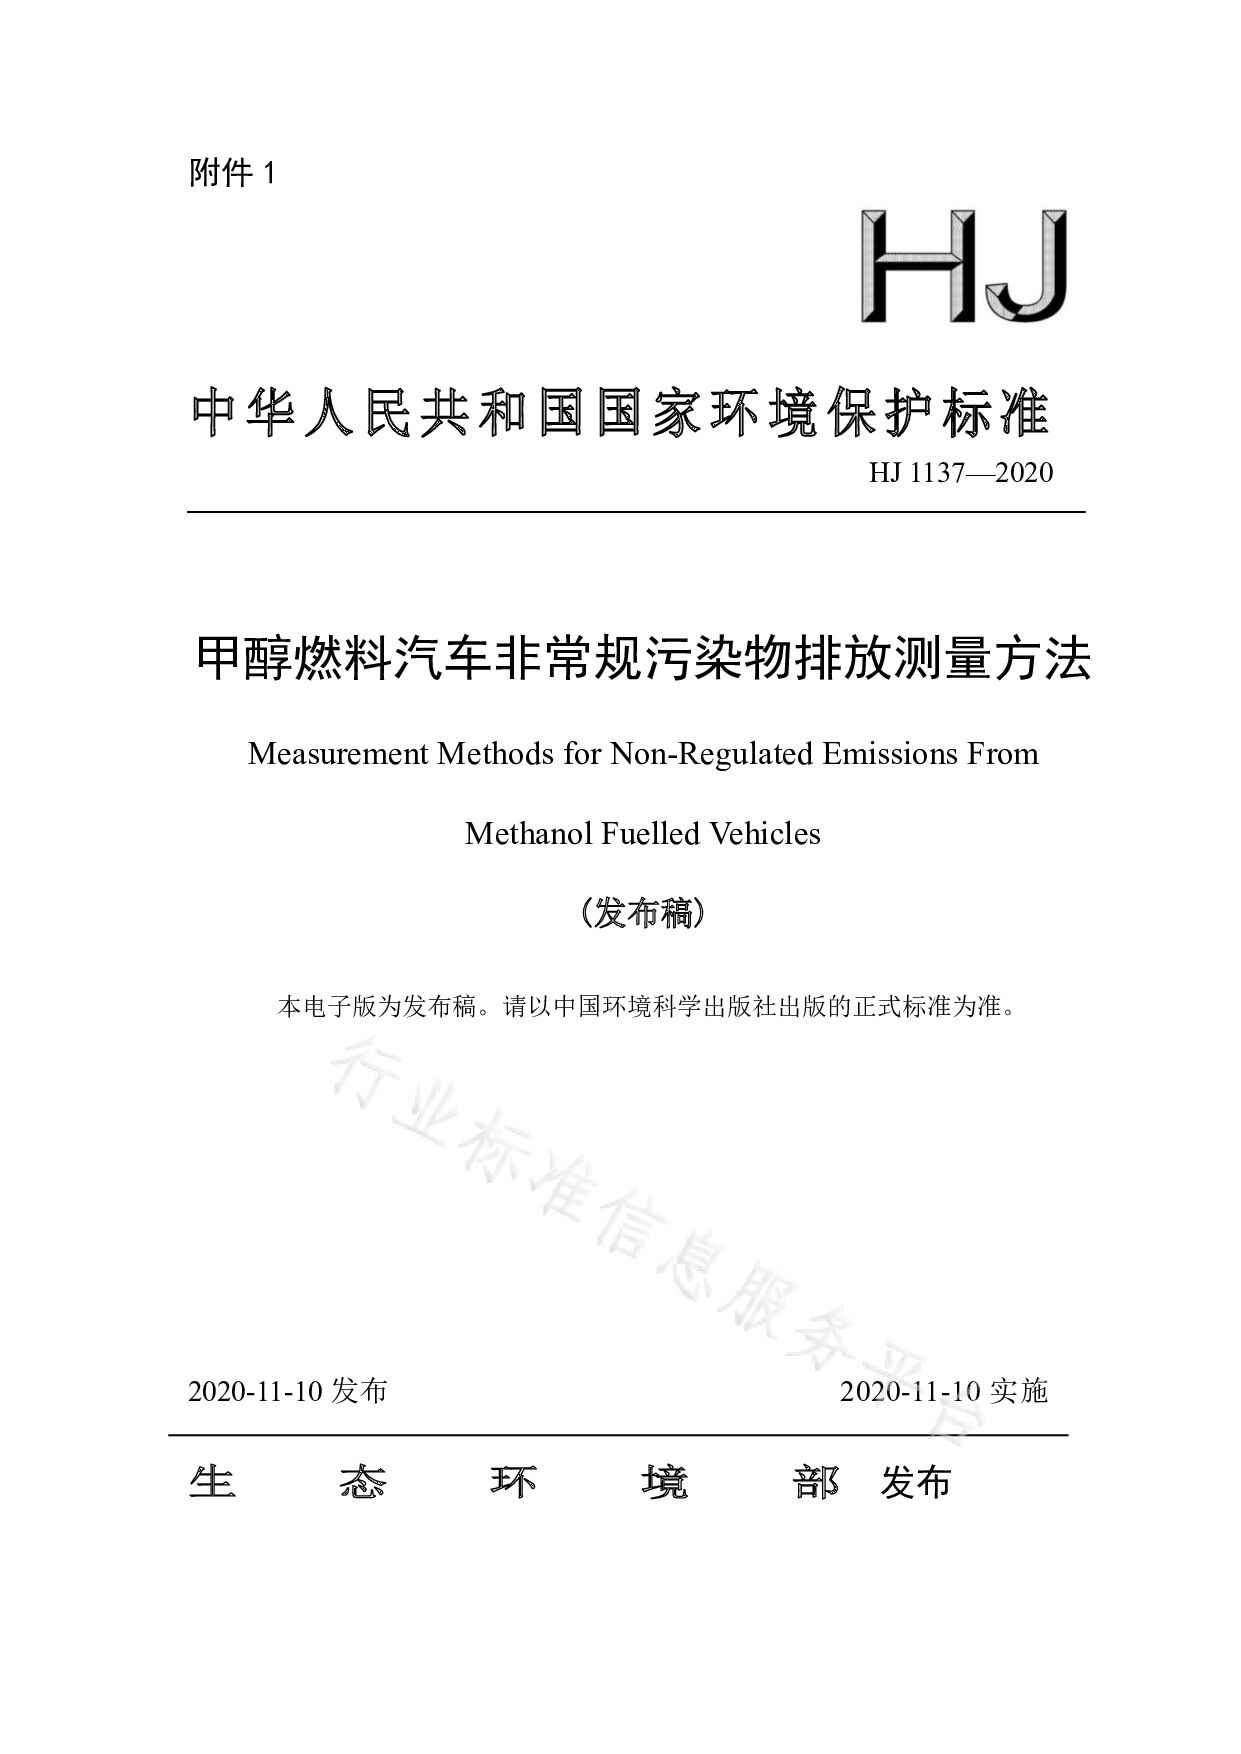 HJ 1137-2020封面图